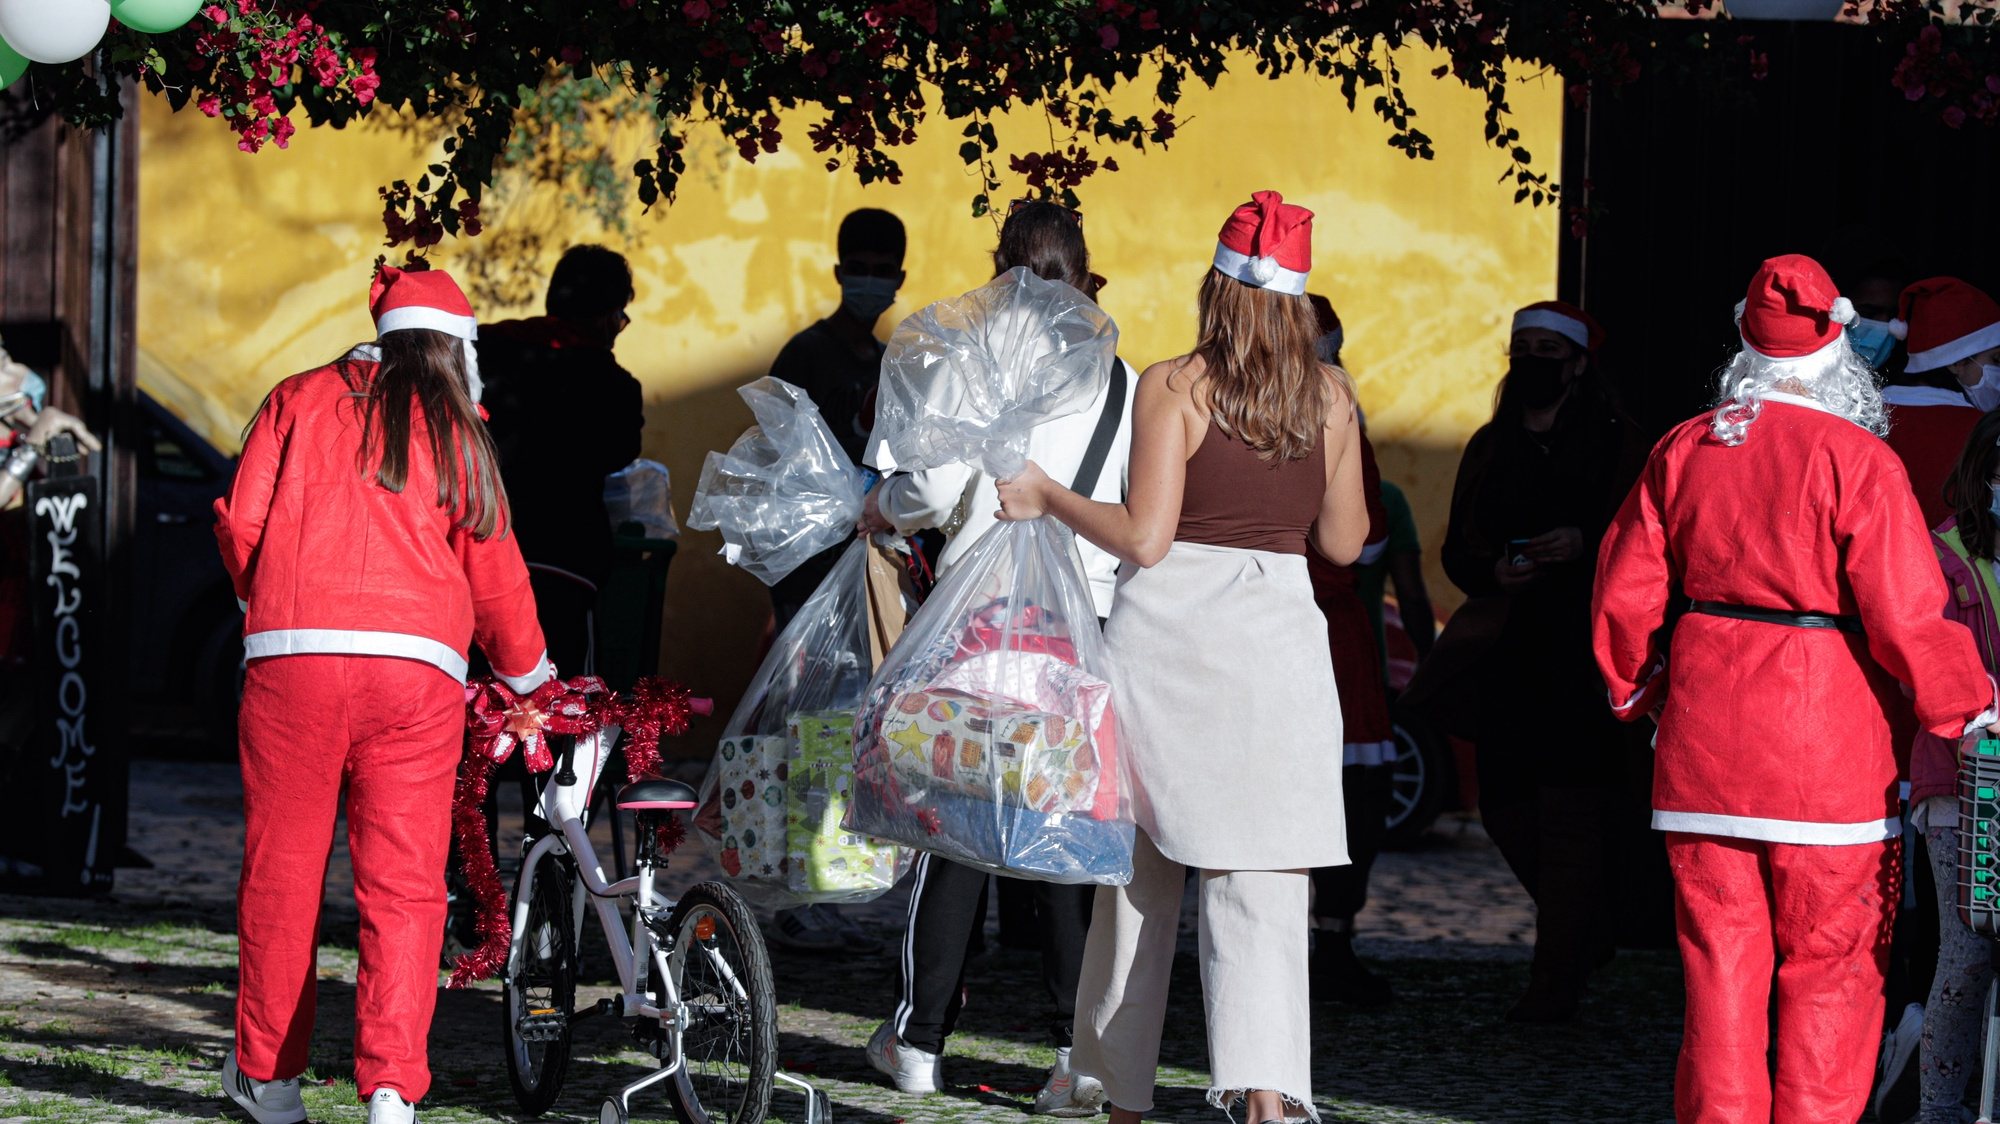 Prendas de Natal são entregues a mais de 100 crianças pela Refood, uma instituição que apoia com bens alimentares familias do concelho de Faro, em Faro, 20 de dezembro de 2020. LUÍS FORRA/LUSA